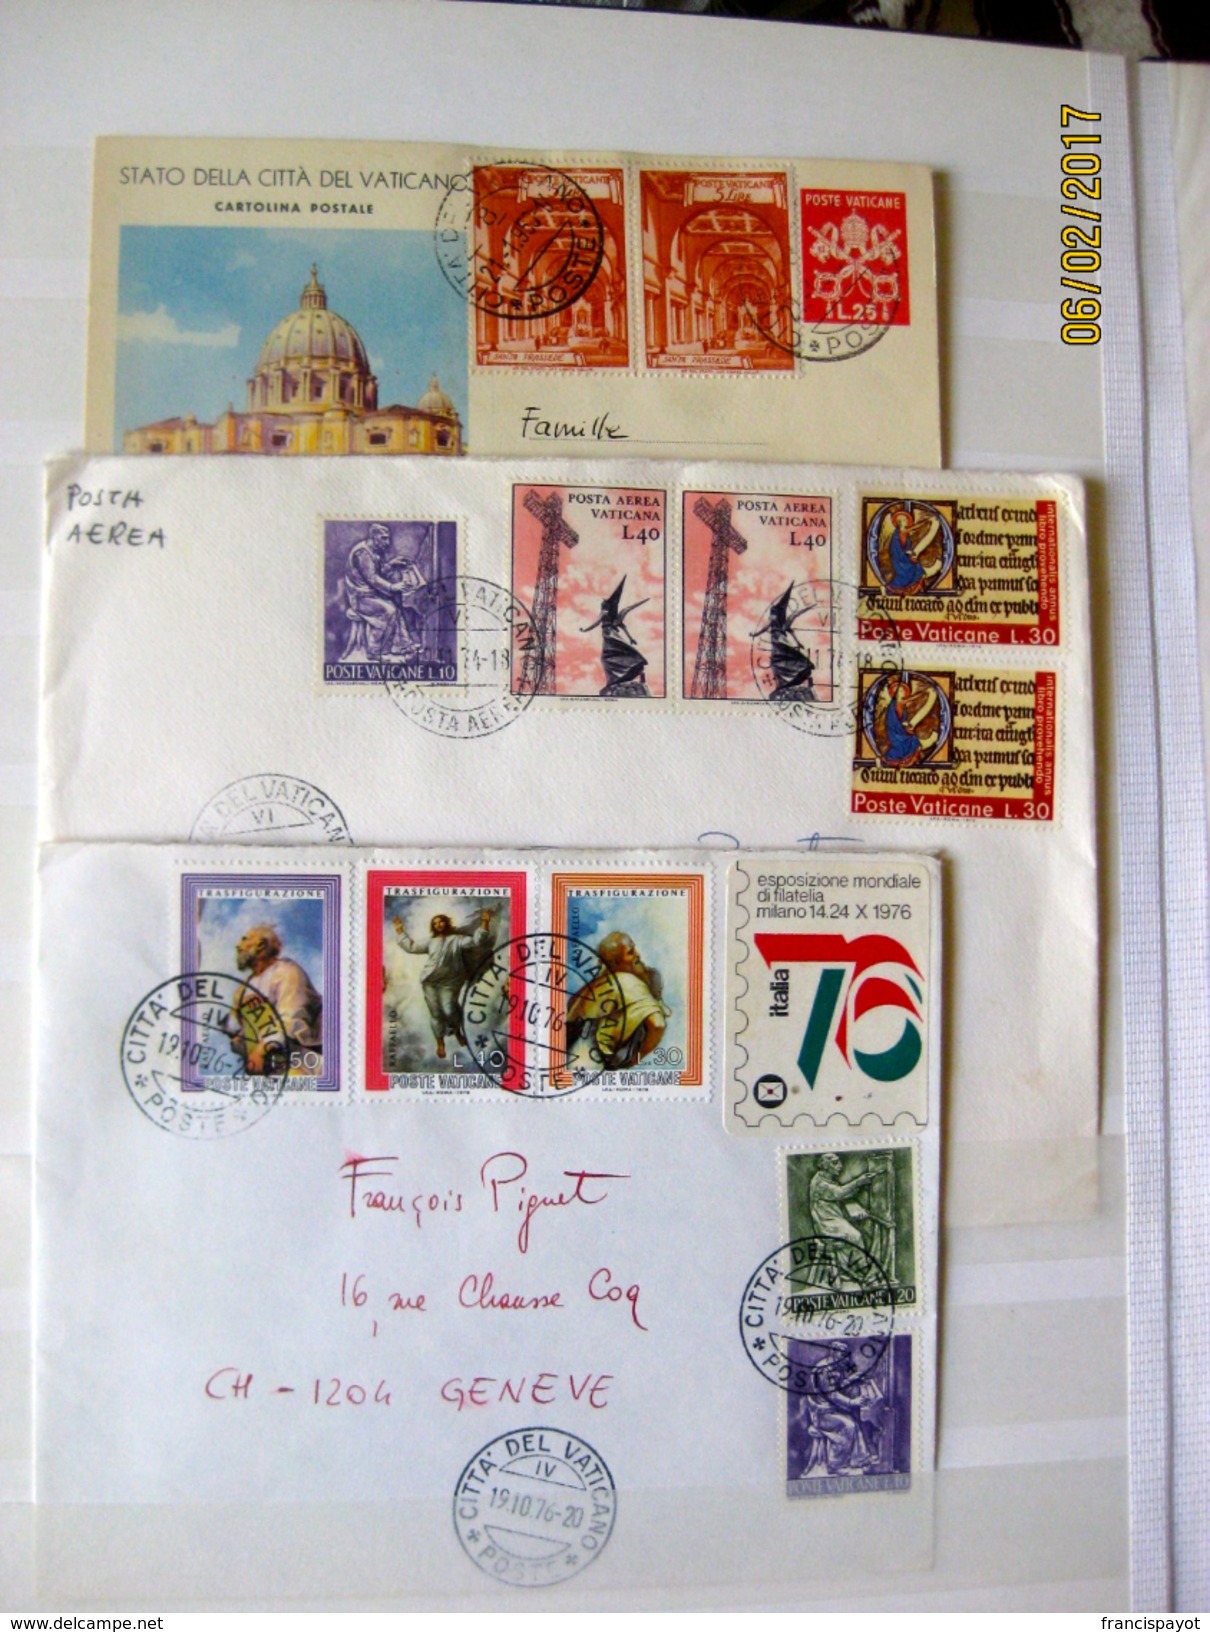 Vatican: 119 stamps + 4 envelops